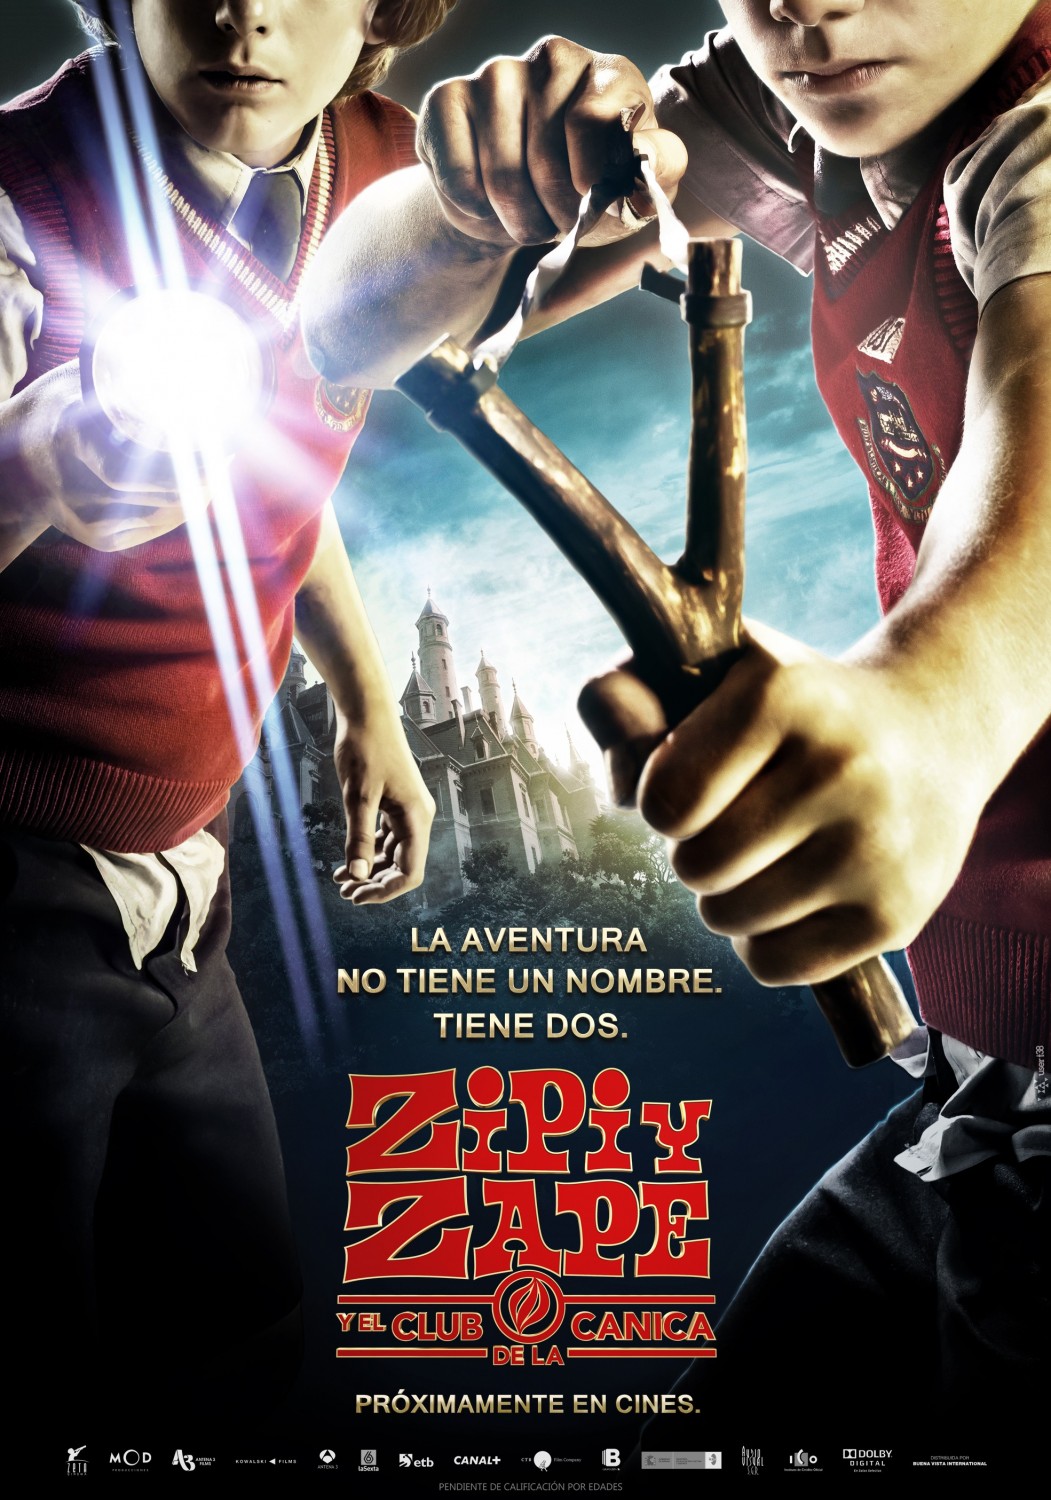 Extra Large Movie Poster Image for Zipi y Zape y el club de la canica (#4 of 6)